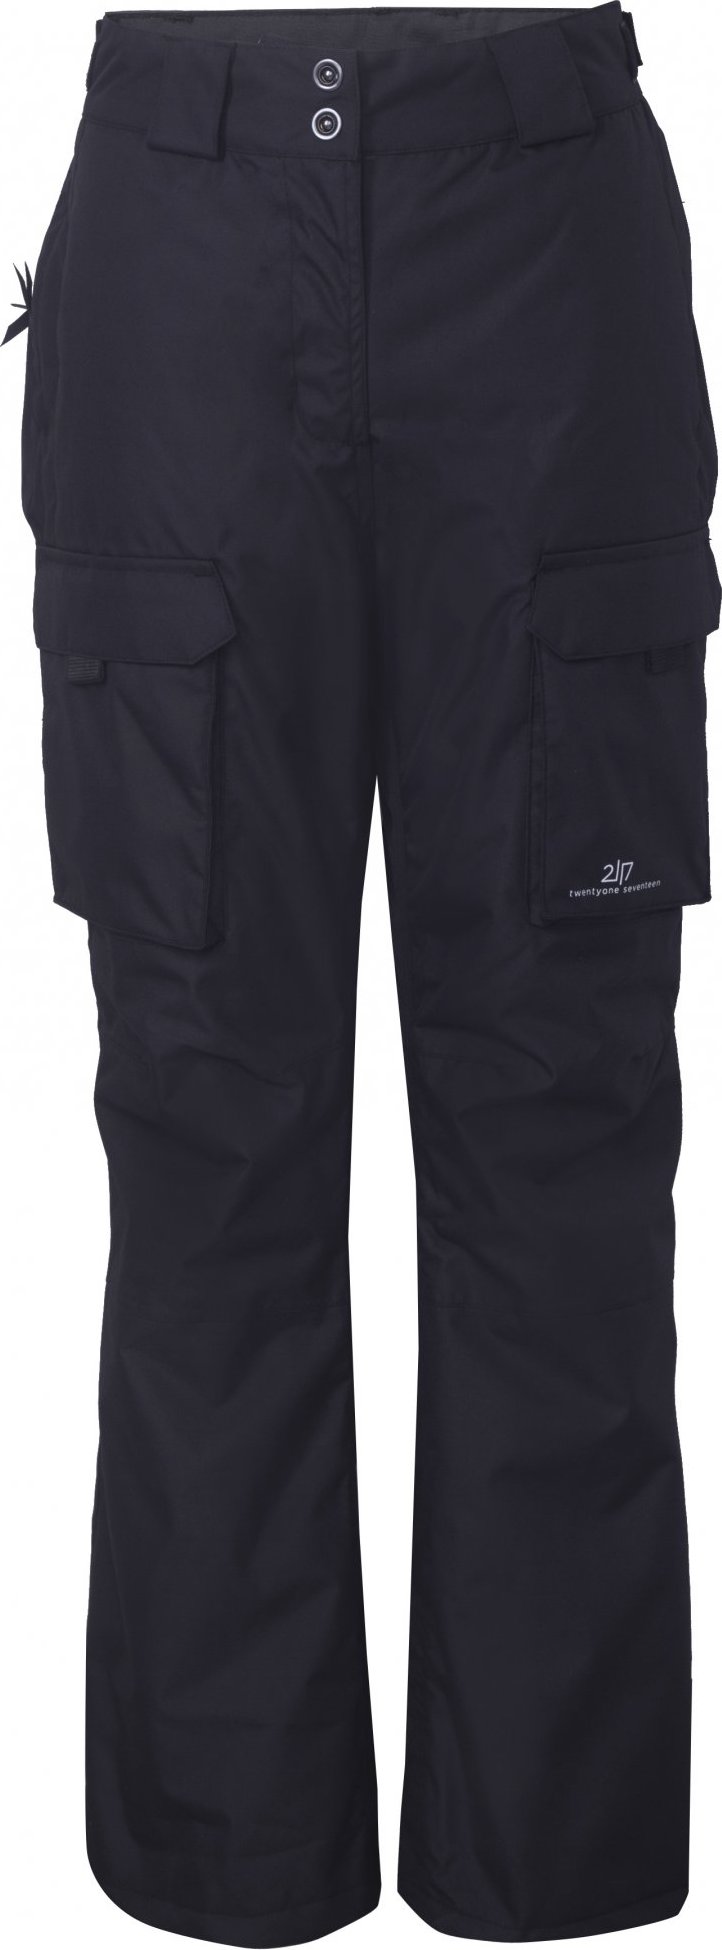 Dámské lyžařské kalhoty 2117 Tybble Eco černá Velikost: XS